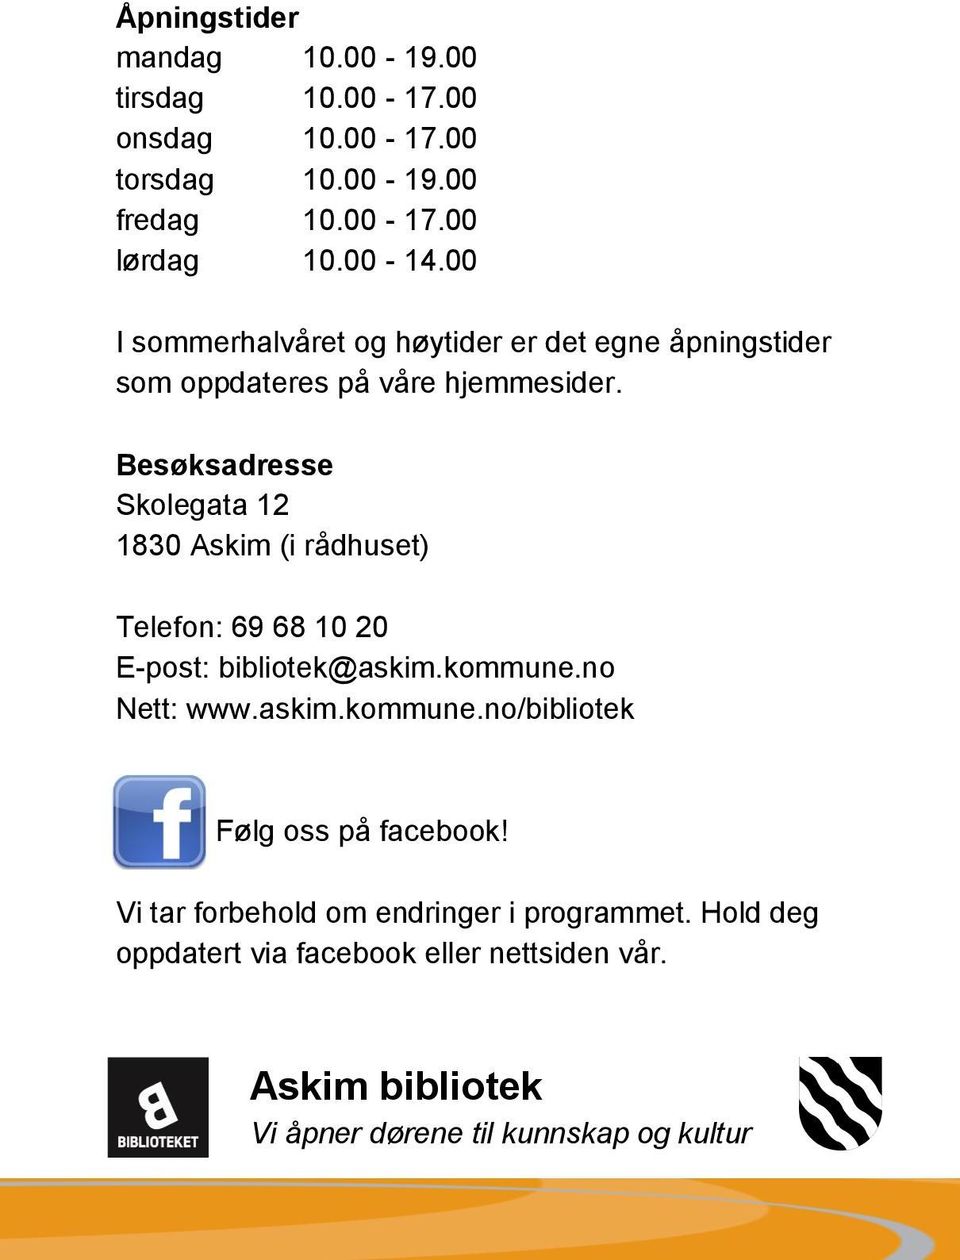 Besøksadresse Skolegata 12 1830 Askim (i rådhuset) Telefon: 69 68 10 20 E-post: bibliotek@askim.kommune.